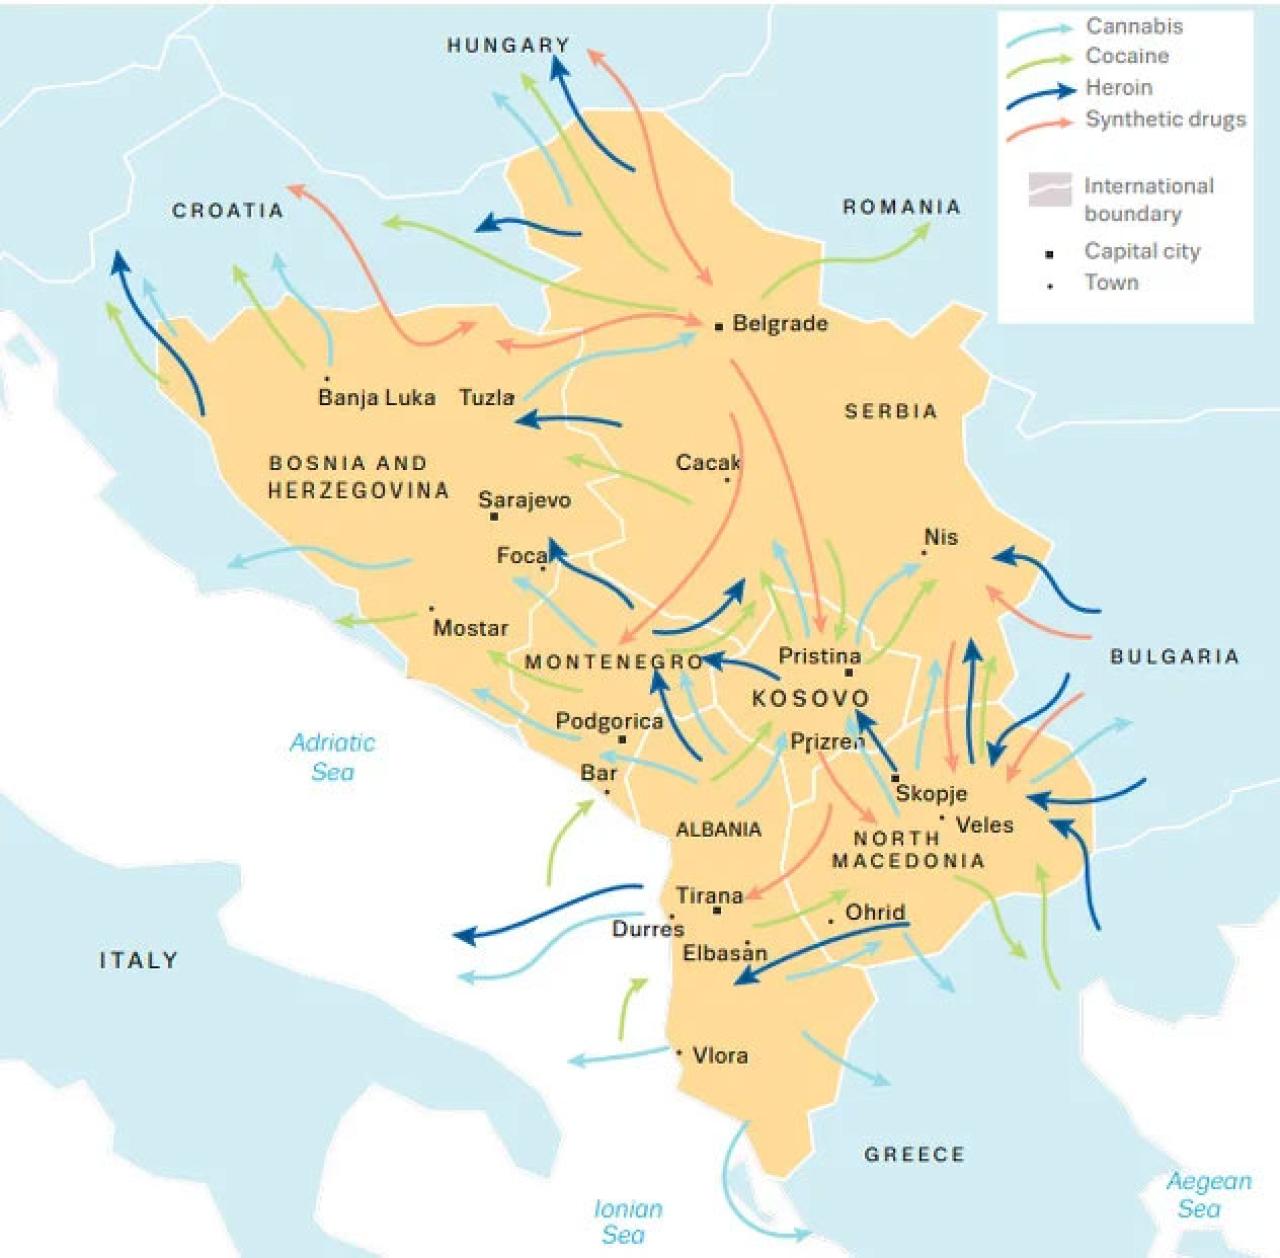 Karta - Objavljen izvještaj o švercu, cijenama i konzumaciji droga na zapadnom Balkanu